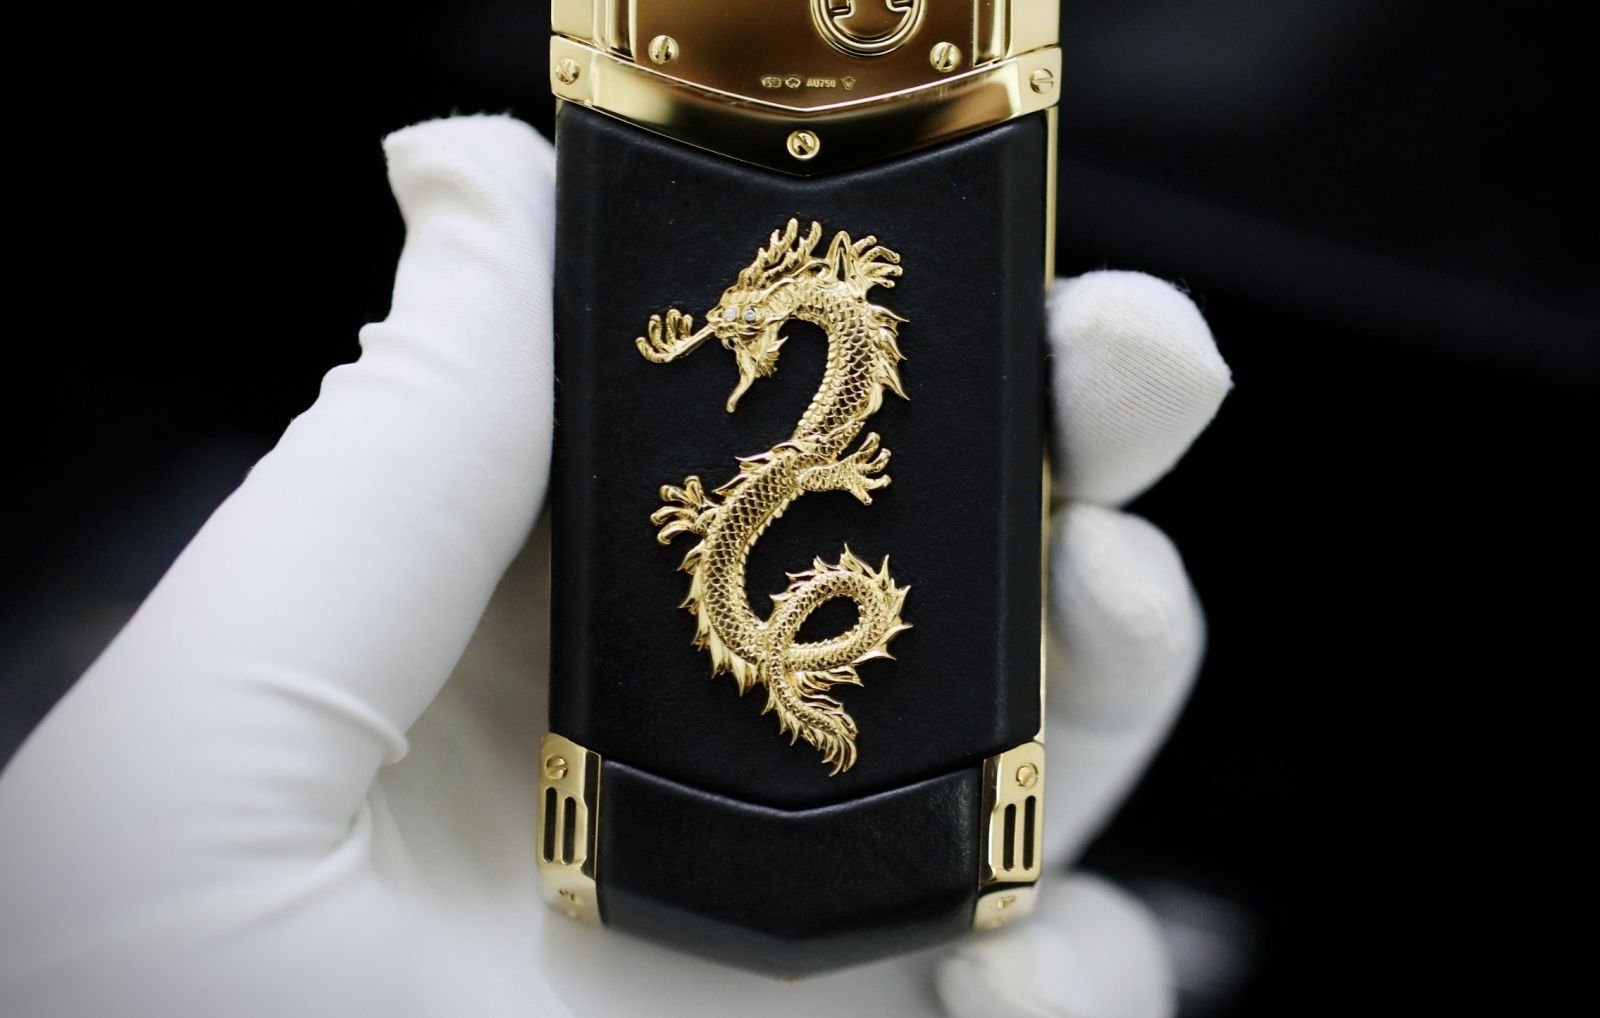 Vertu Signature S Dragon Rose Gold